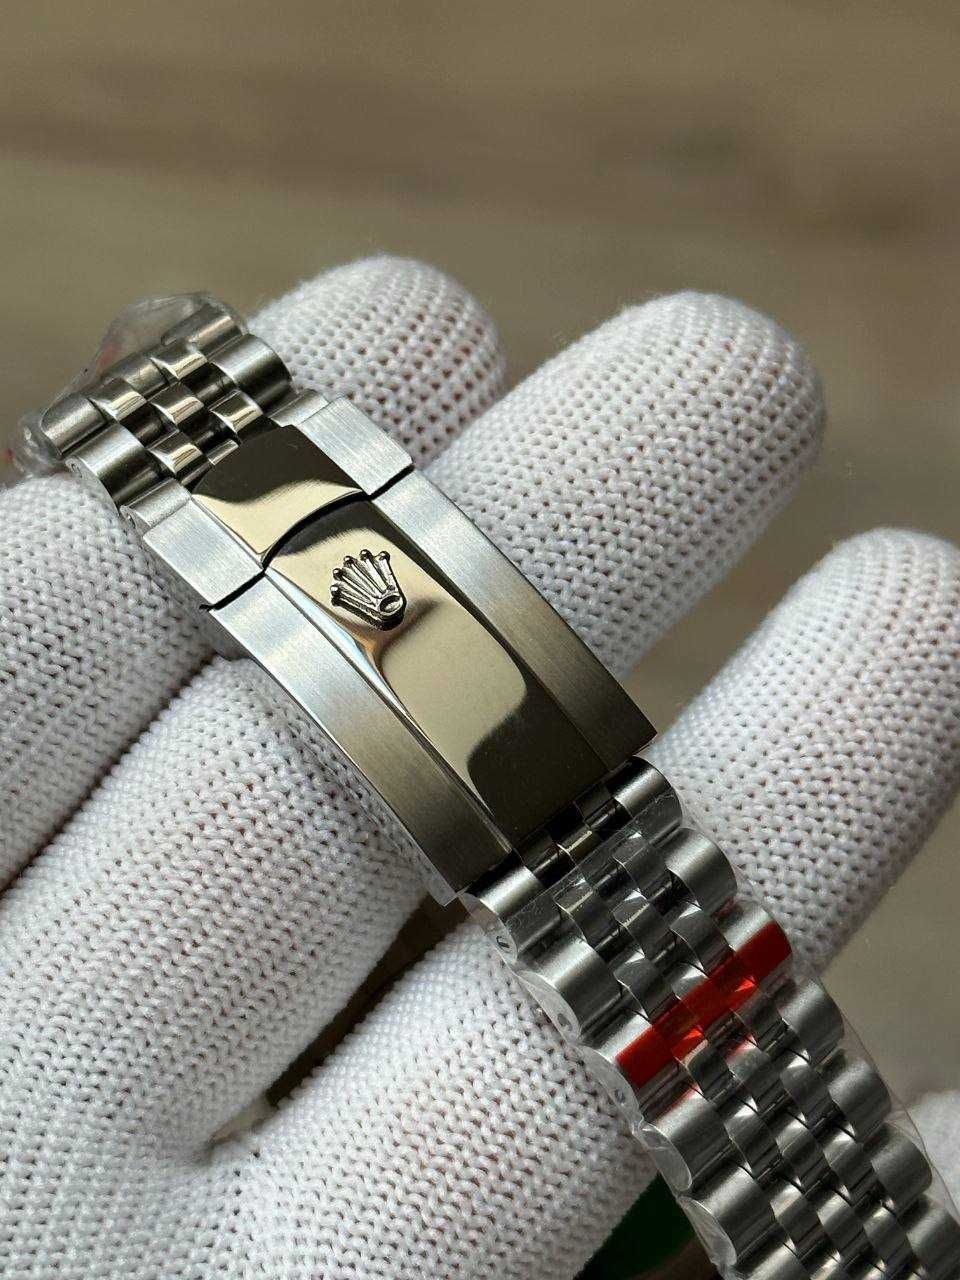 Механические часы Rolex Datejust Silver-Blue. Автоподзавод